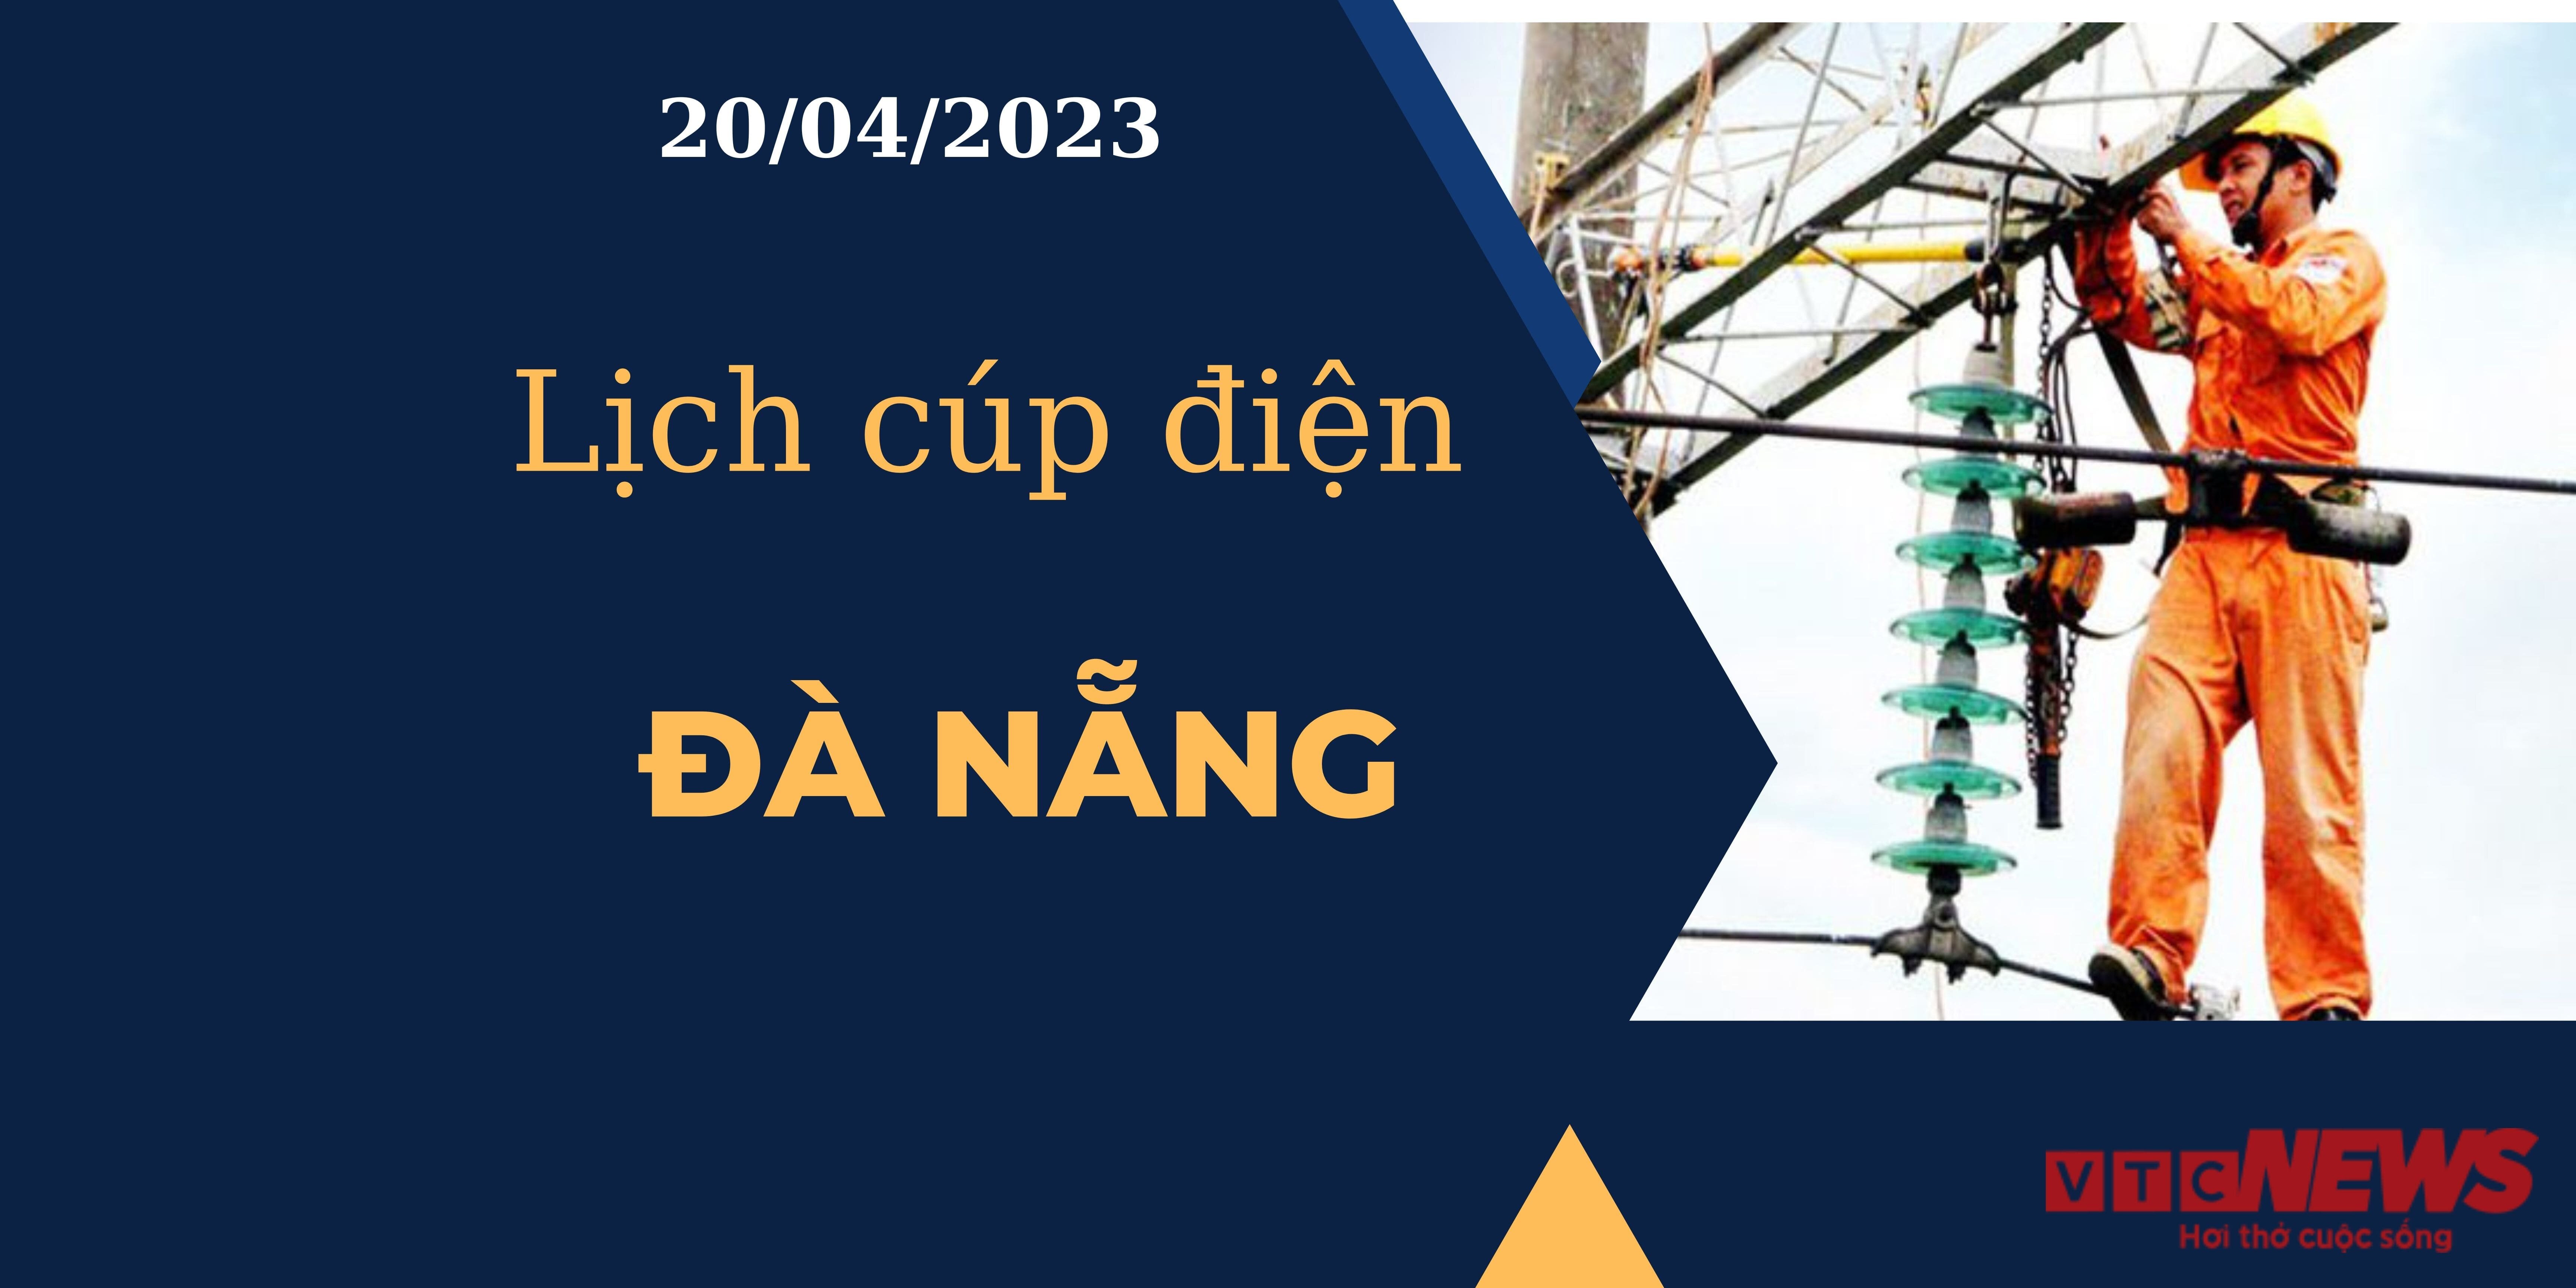 Lịch cúp điện hôm nay tại Đà Nẵng ngày 20/04/2023 - 1